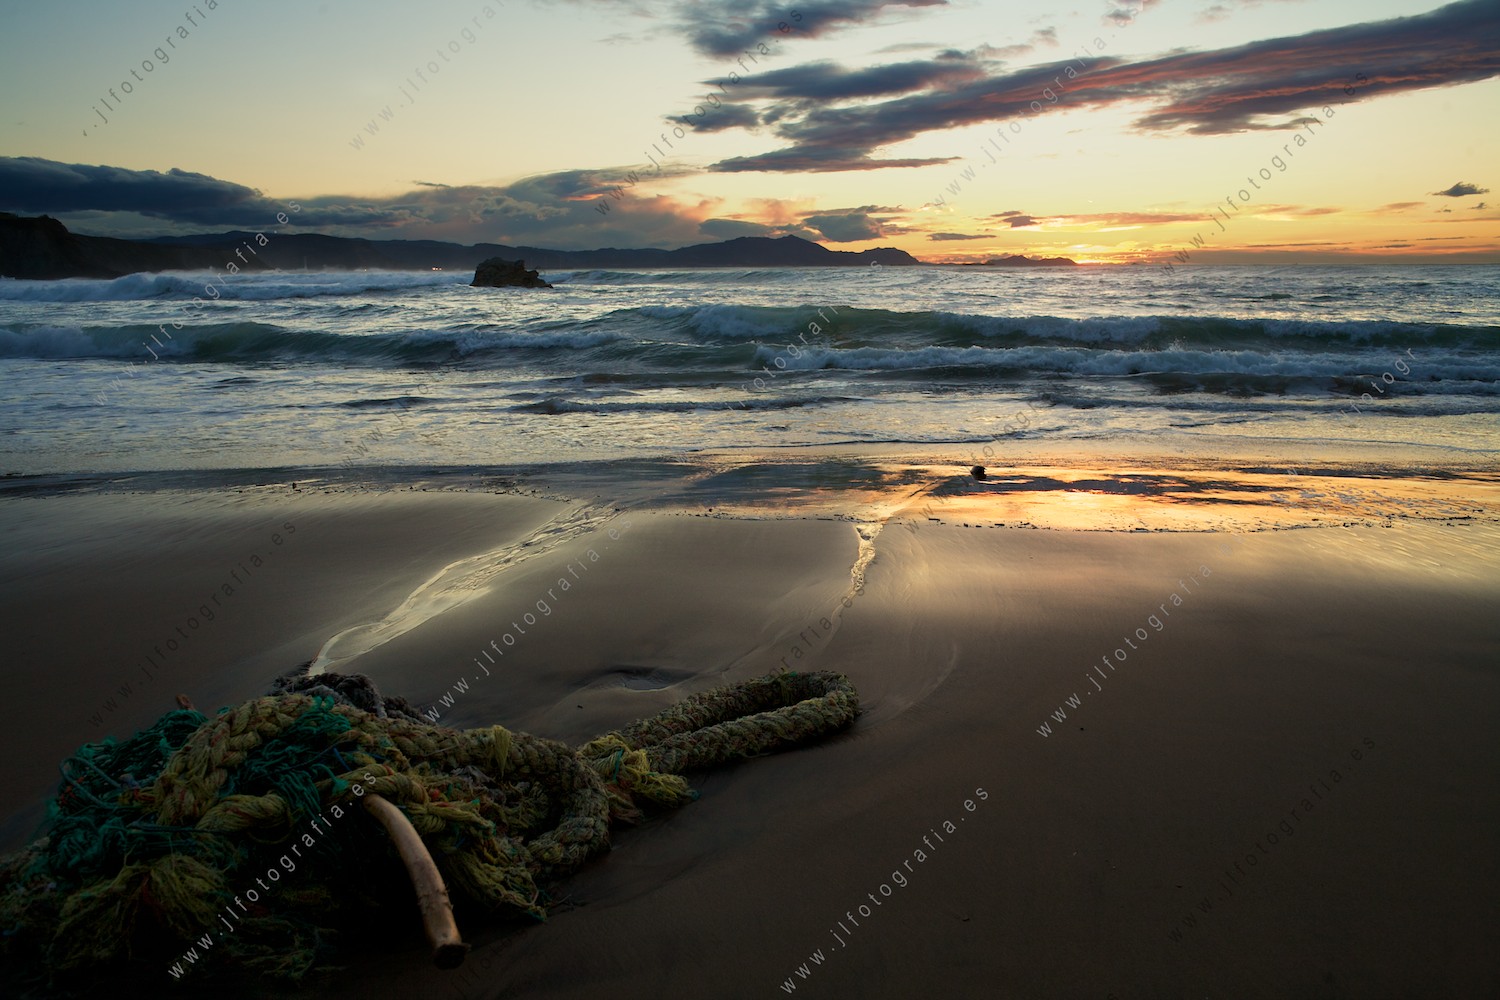 Una amarra perdida en la orilla de la playa en el ocaso